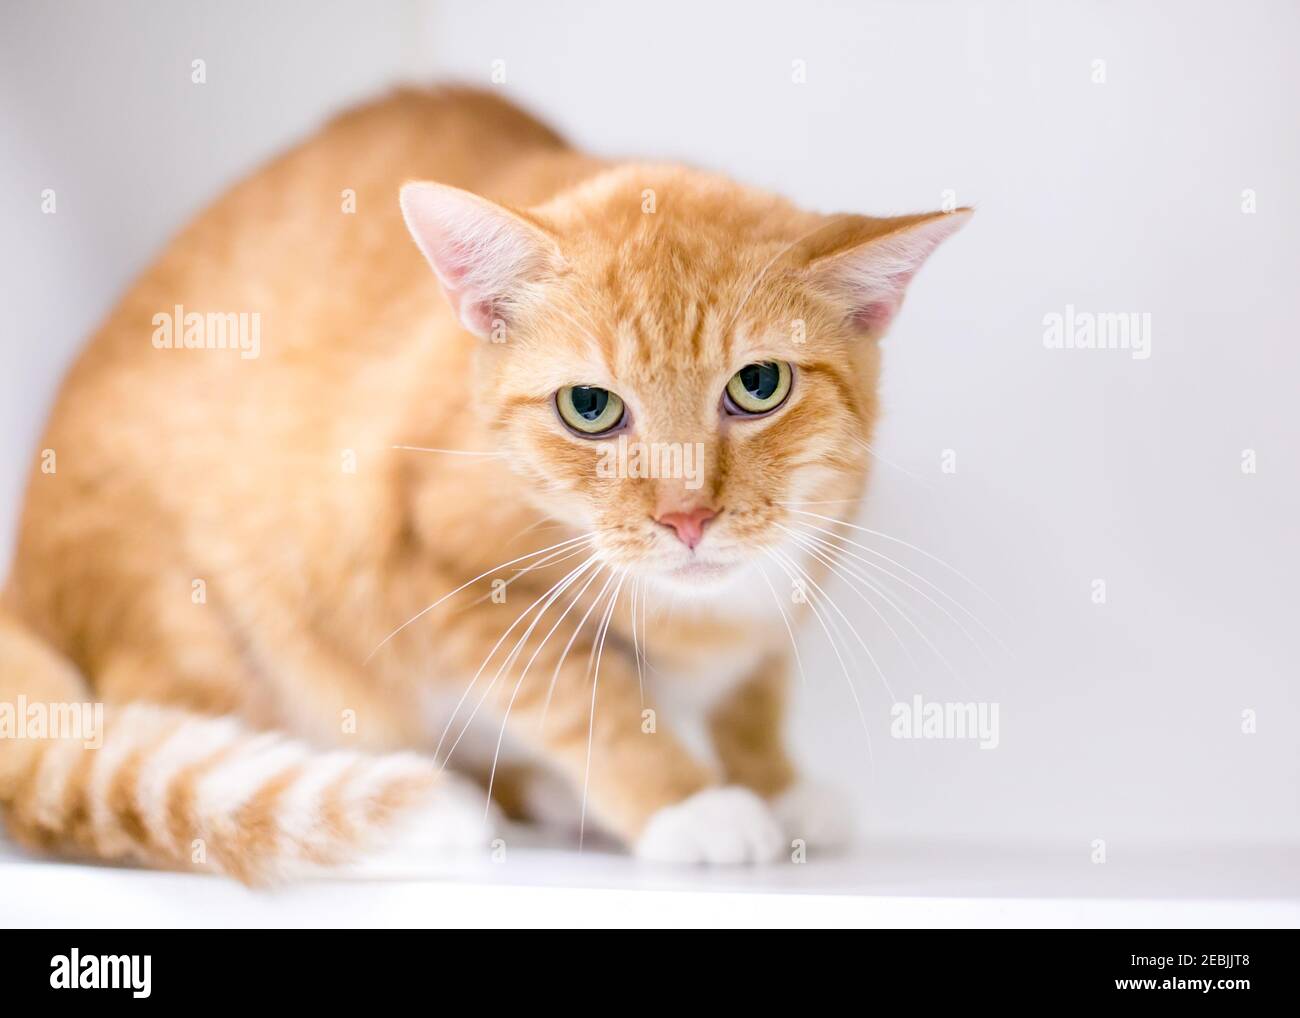 Un gatto tabby shorthair arancione che mostra il linguaggio del corpo teso, accovacciandosi e fissando la macchina fotografica con pupille dilatate e un'espressione grumpia Foto Stock